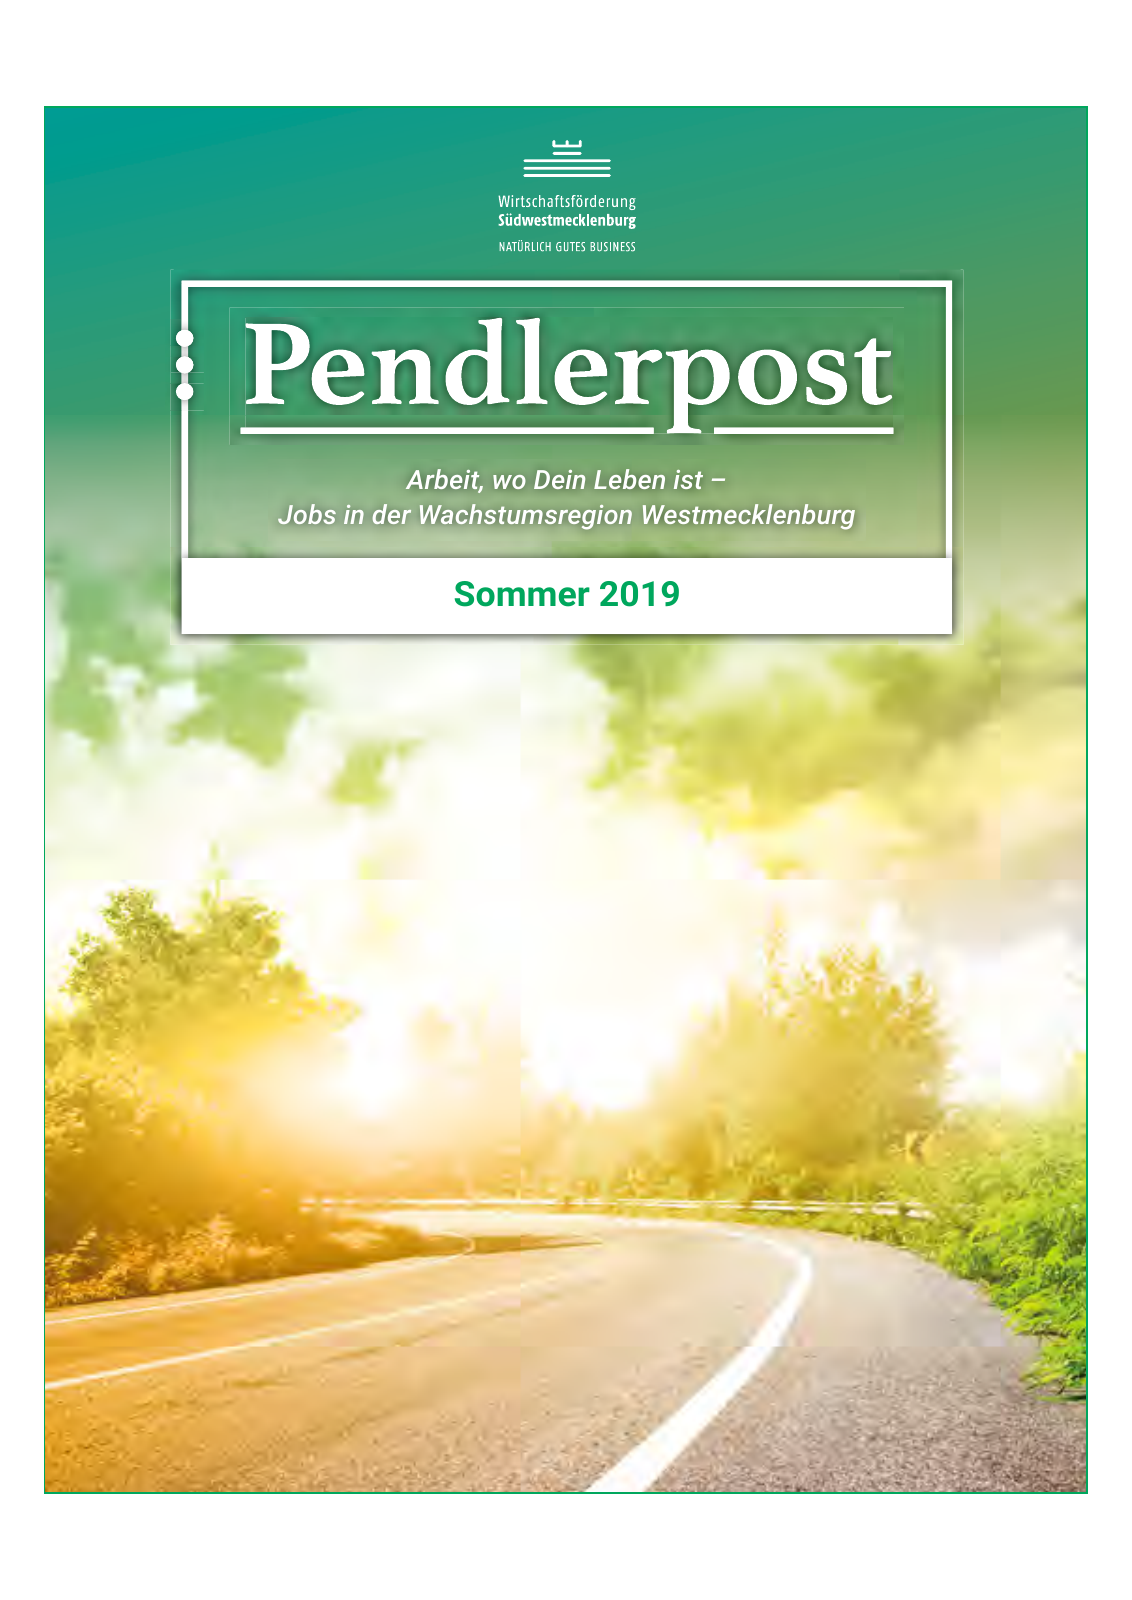 Vorschau Pendlerpost Sommer 2019_web Seite 1